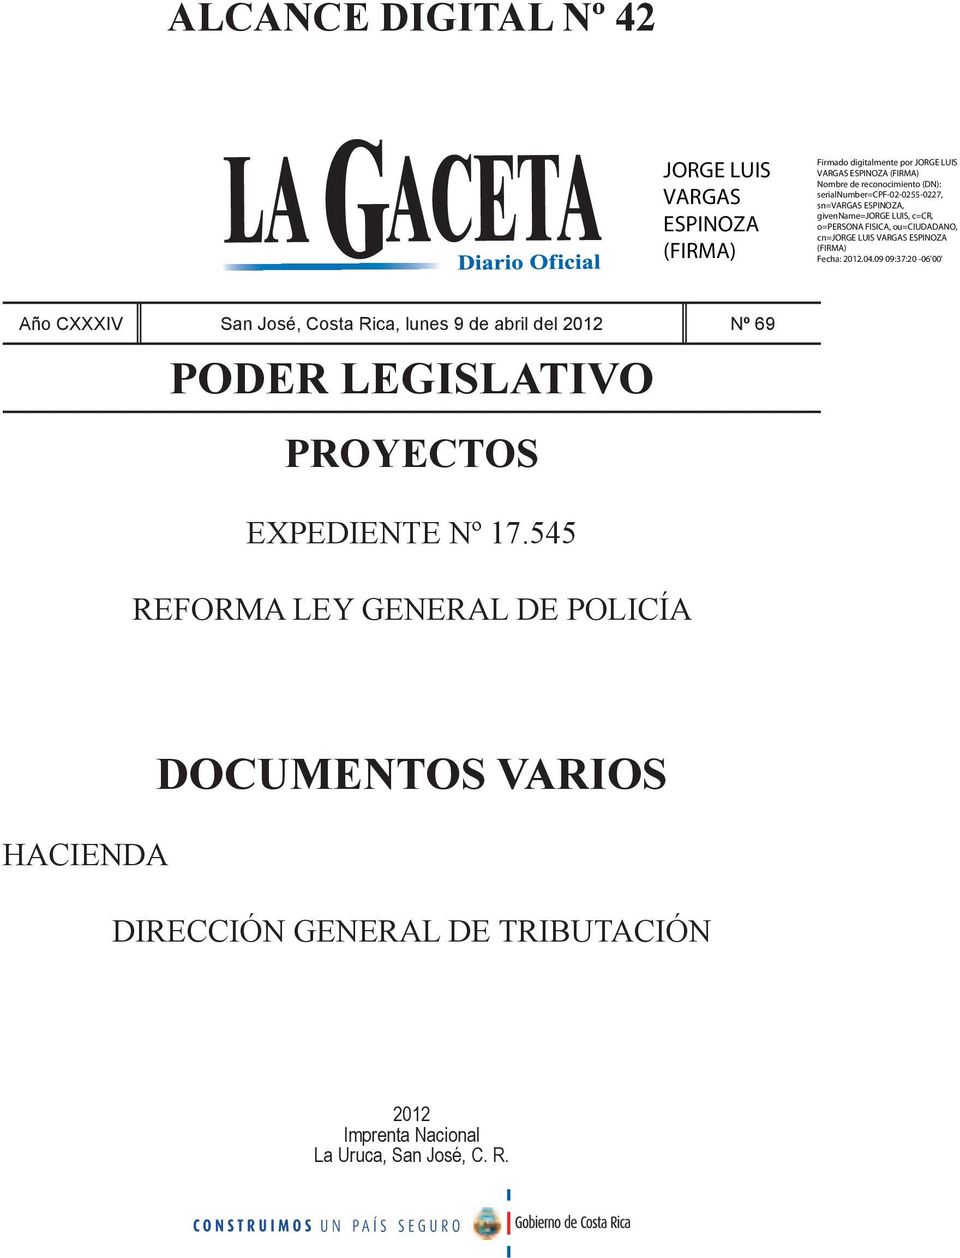 545 REFORMA LEY GENERAL DE POLICÍA HACIENDA DOCUMENTOS VARIOS